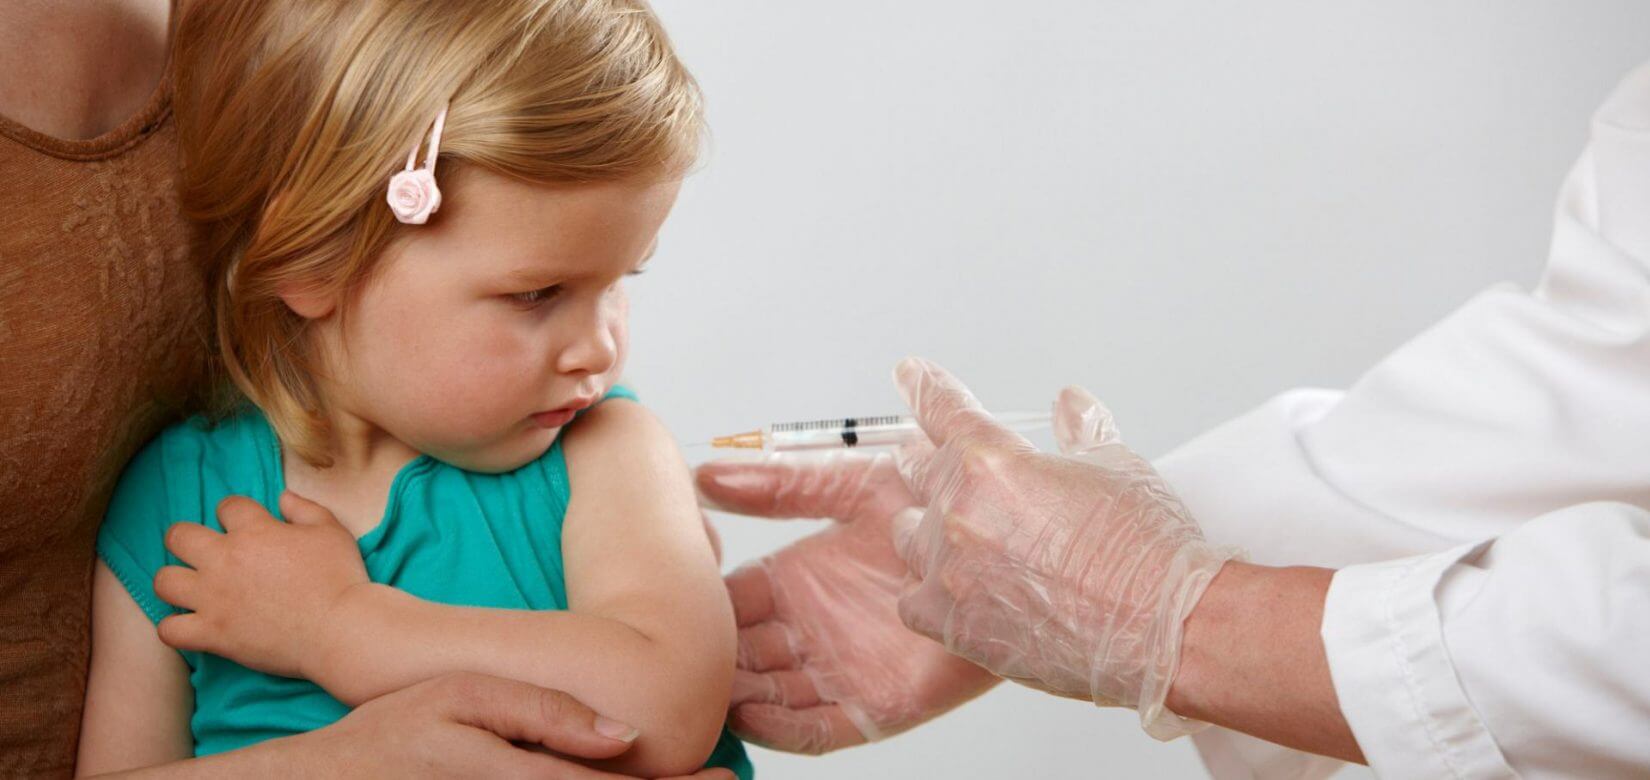 Από σήμερα ξεκινούν οι εμβολιασμοί παιδιών ηλικίας από 5 ετών - Αυξημένο ενδιαφέρον